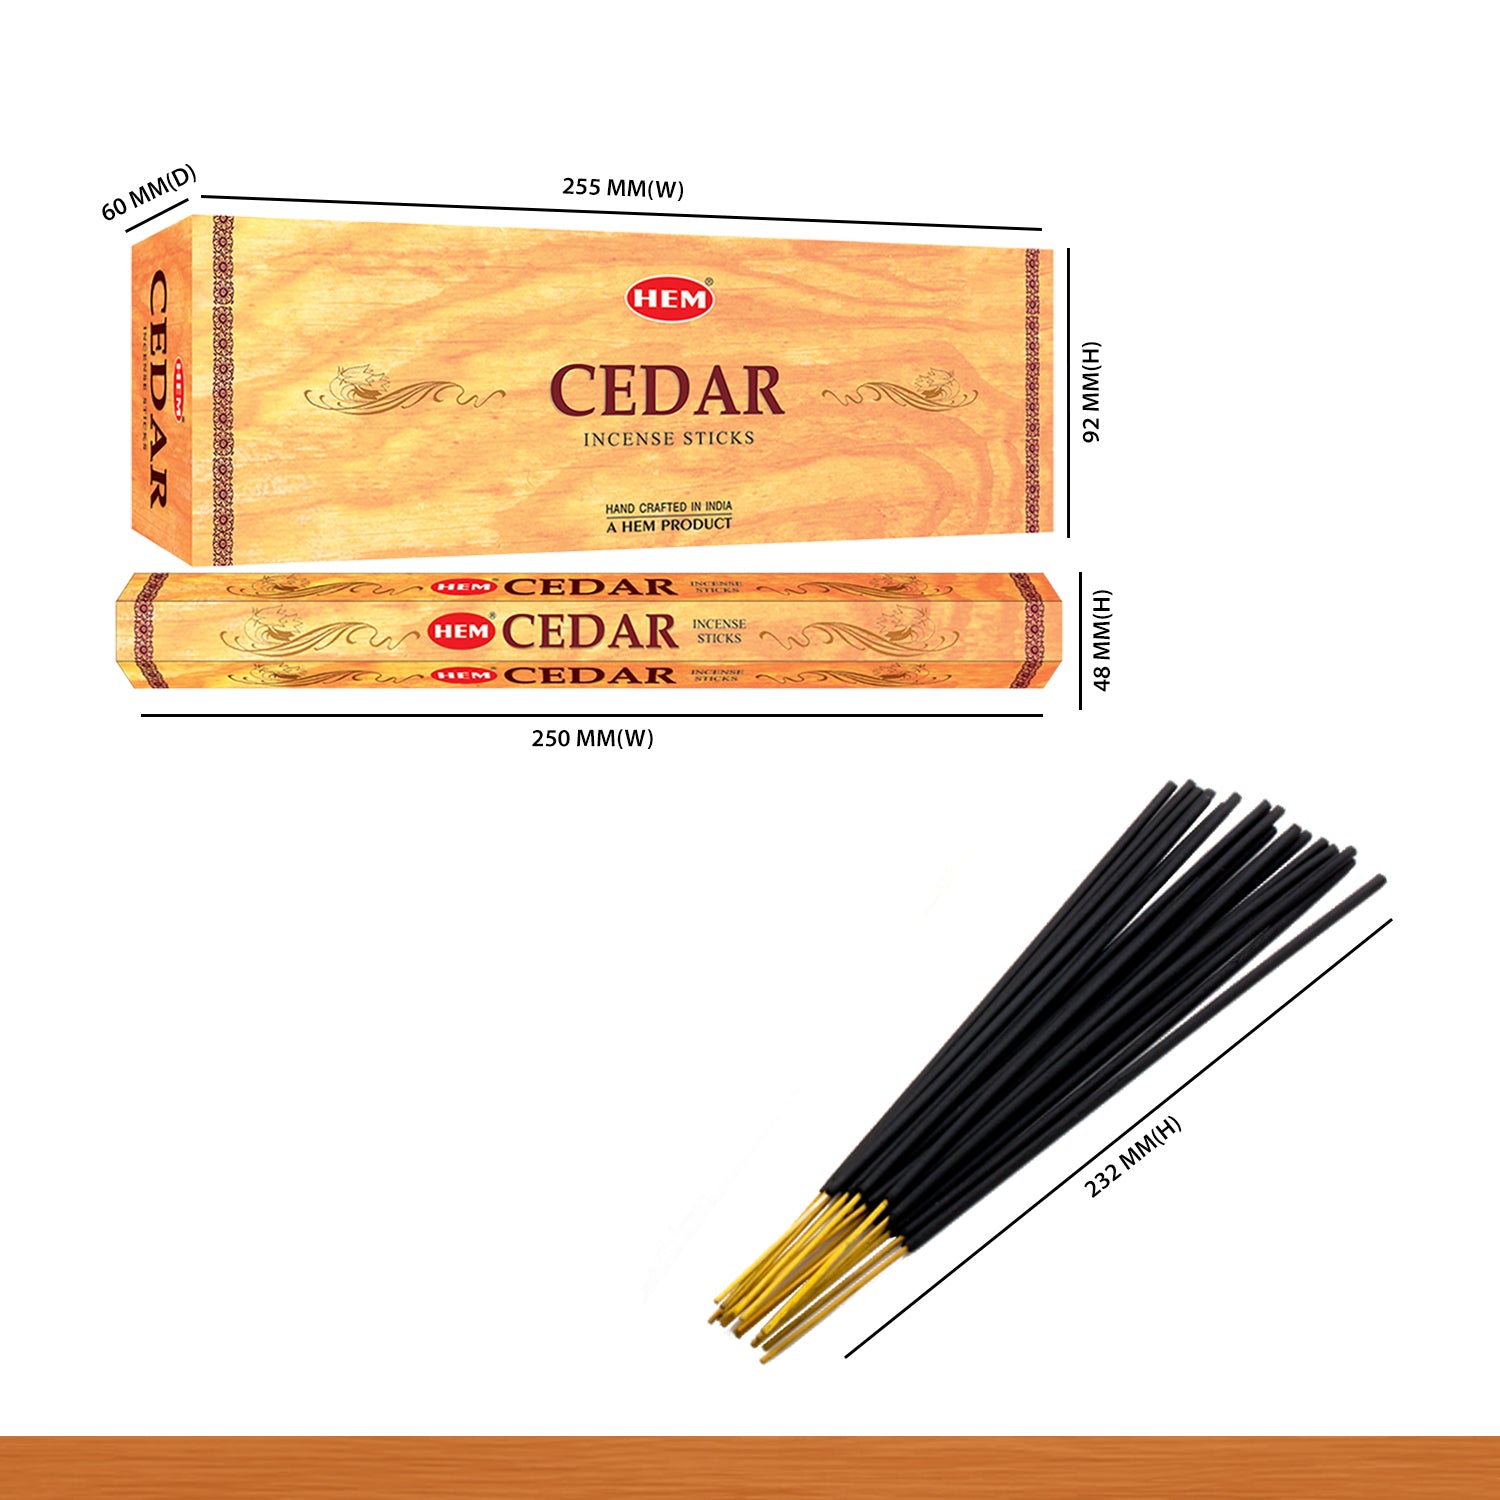 Cedar Incense Sticks (Pack of 120 Sticks)